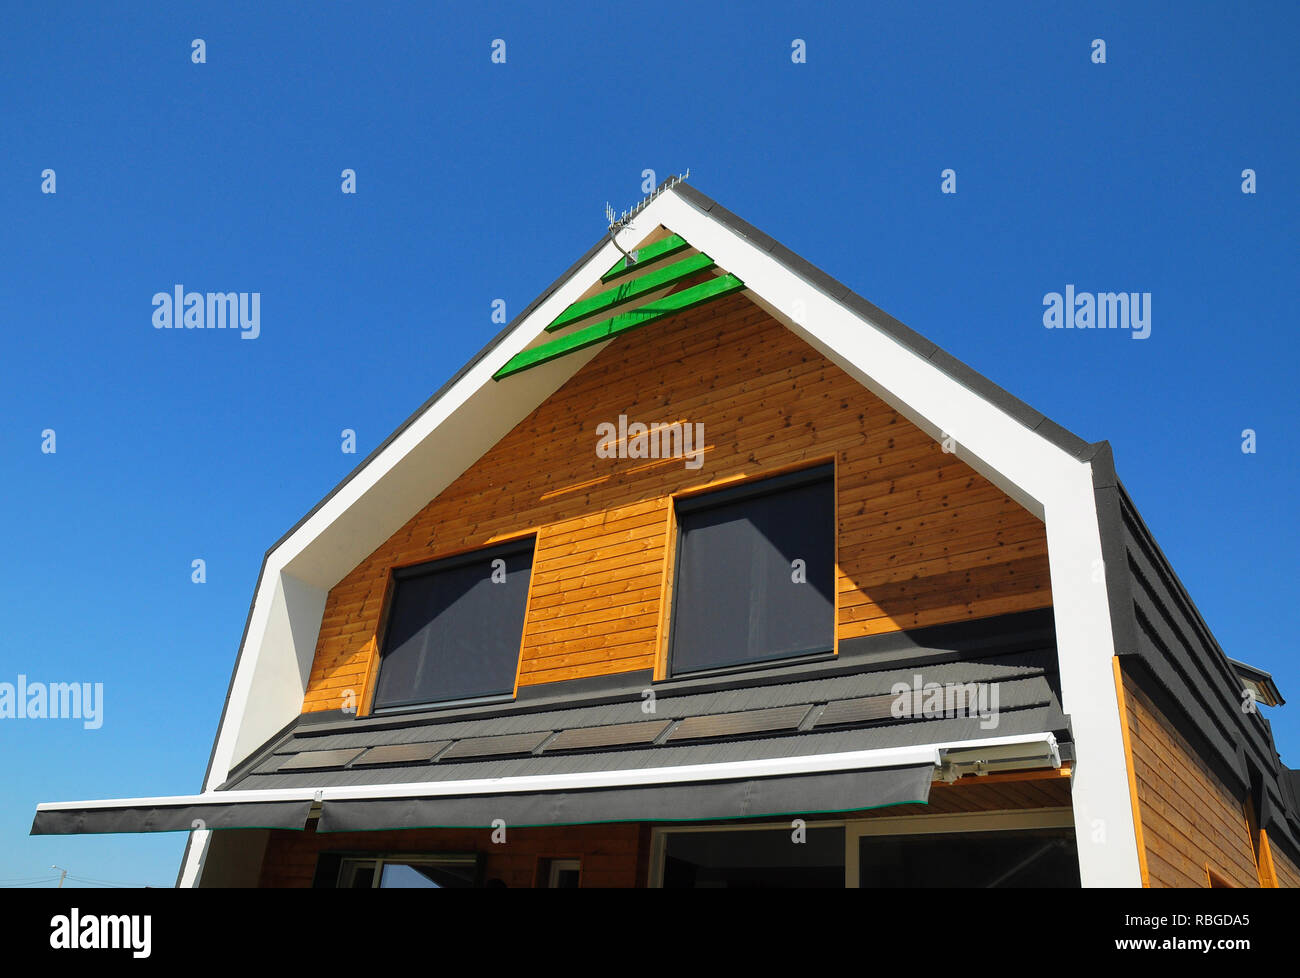 Cortinas solares fotografías e imágenes de alta resolución - Alamy